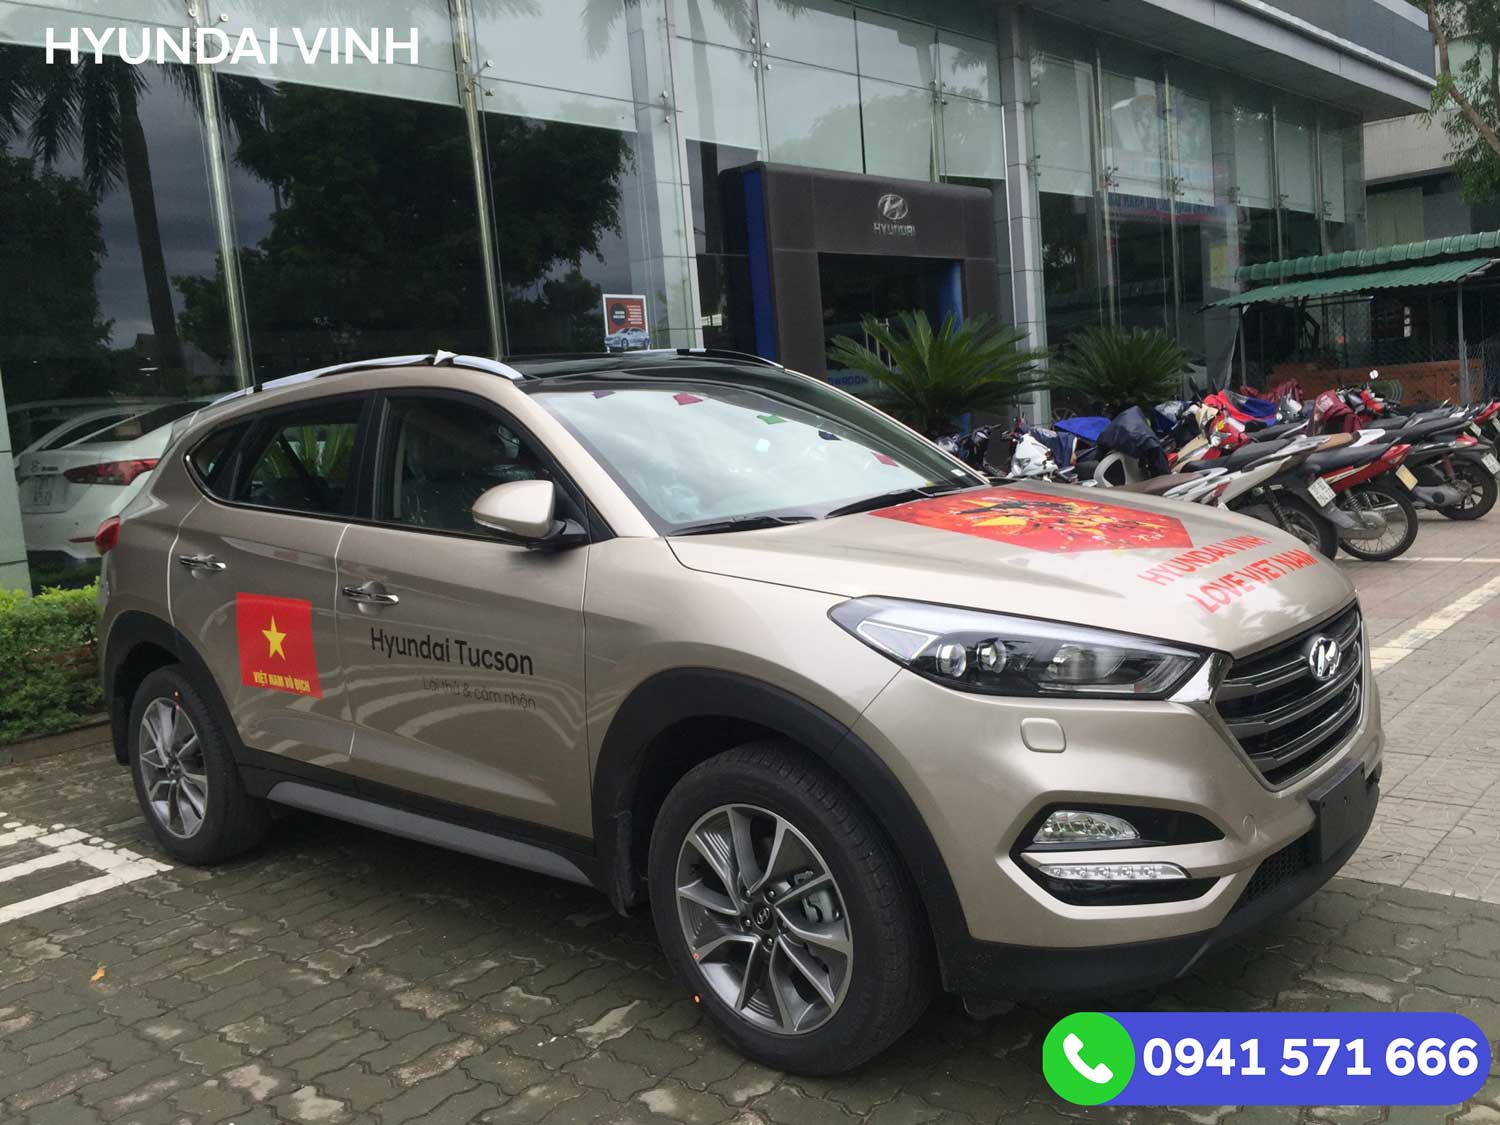 Roadshow Hyundai Vinh